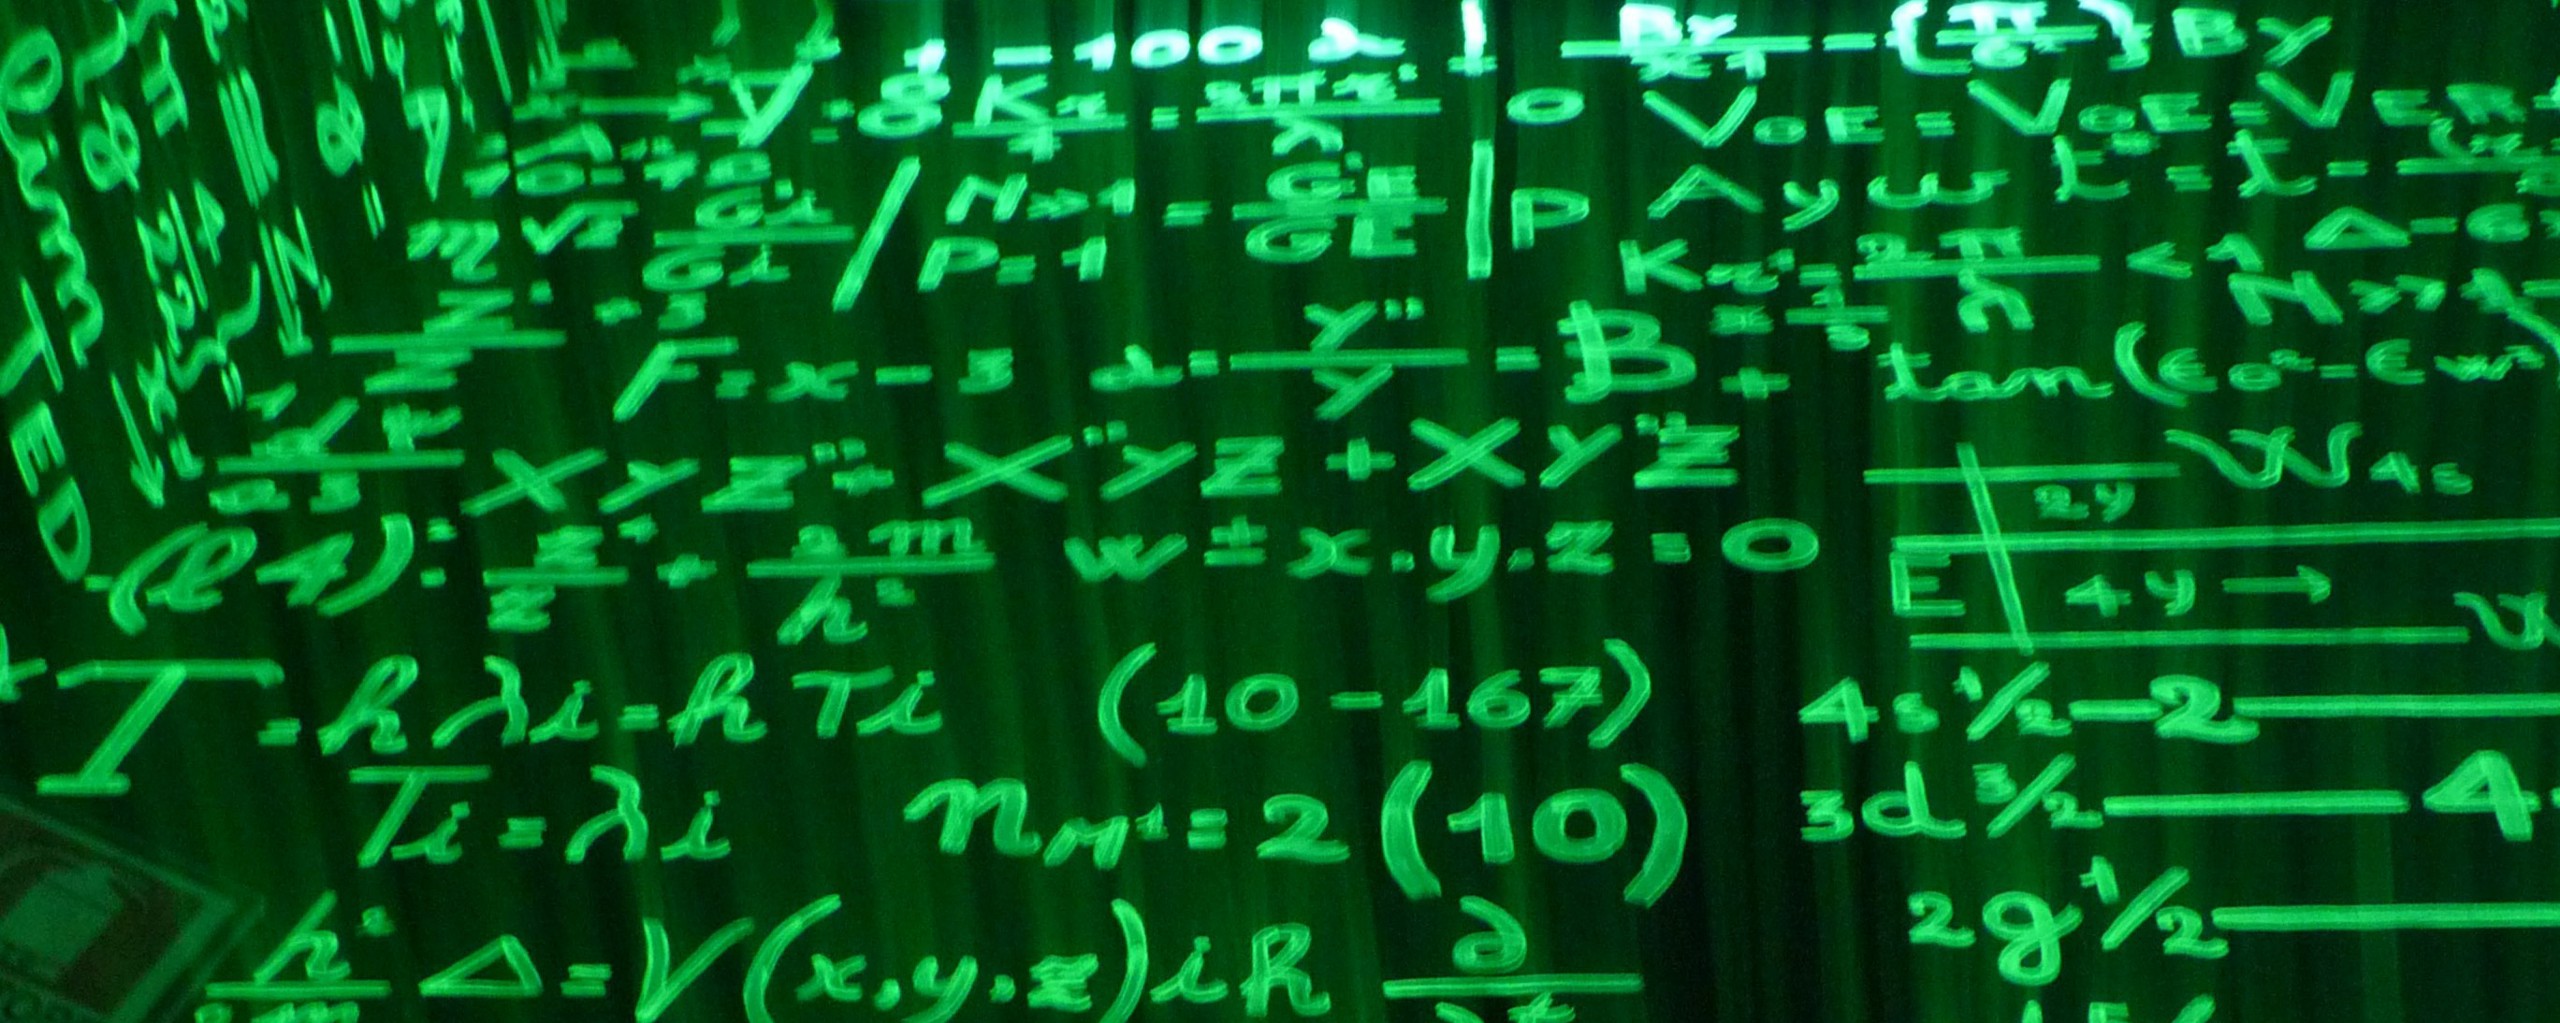 Green written equations on a blackboard.